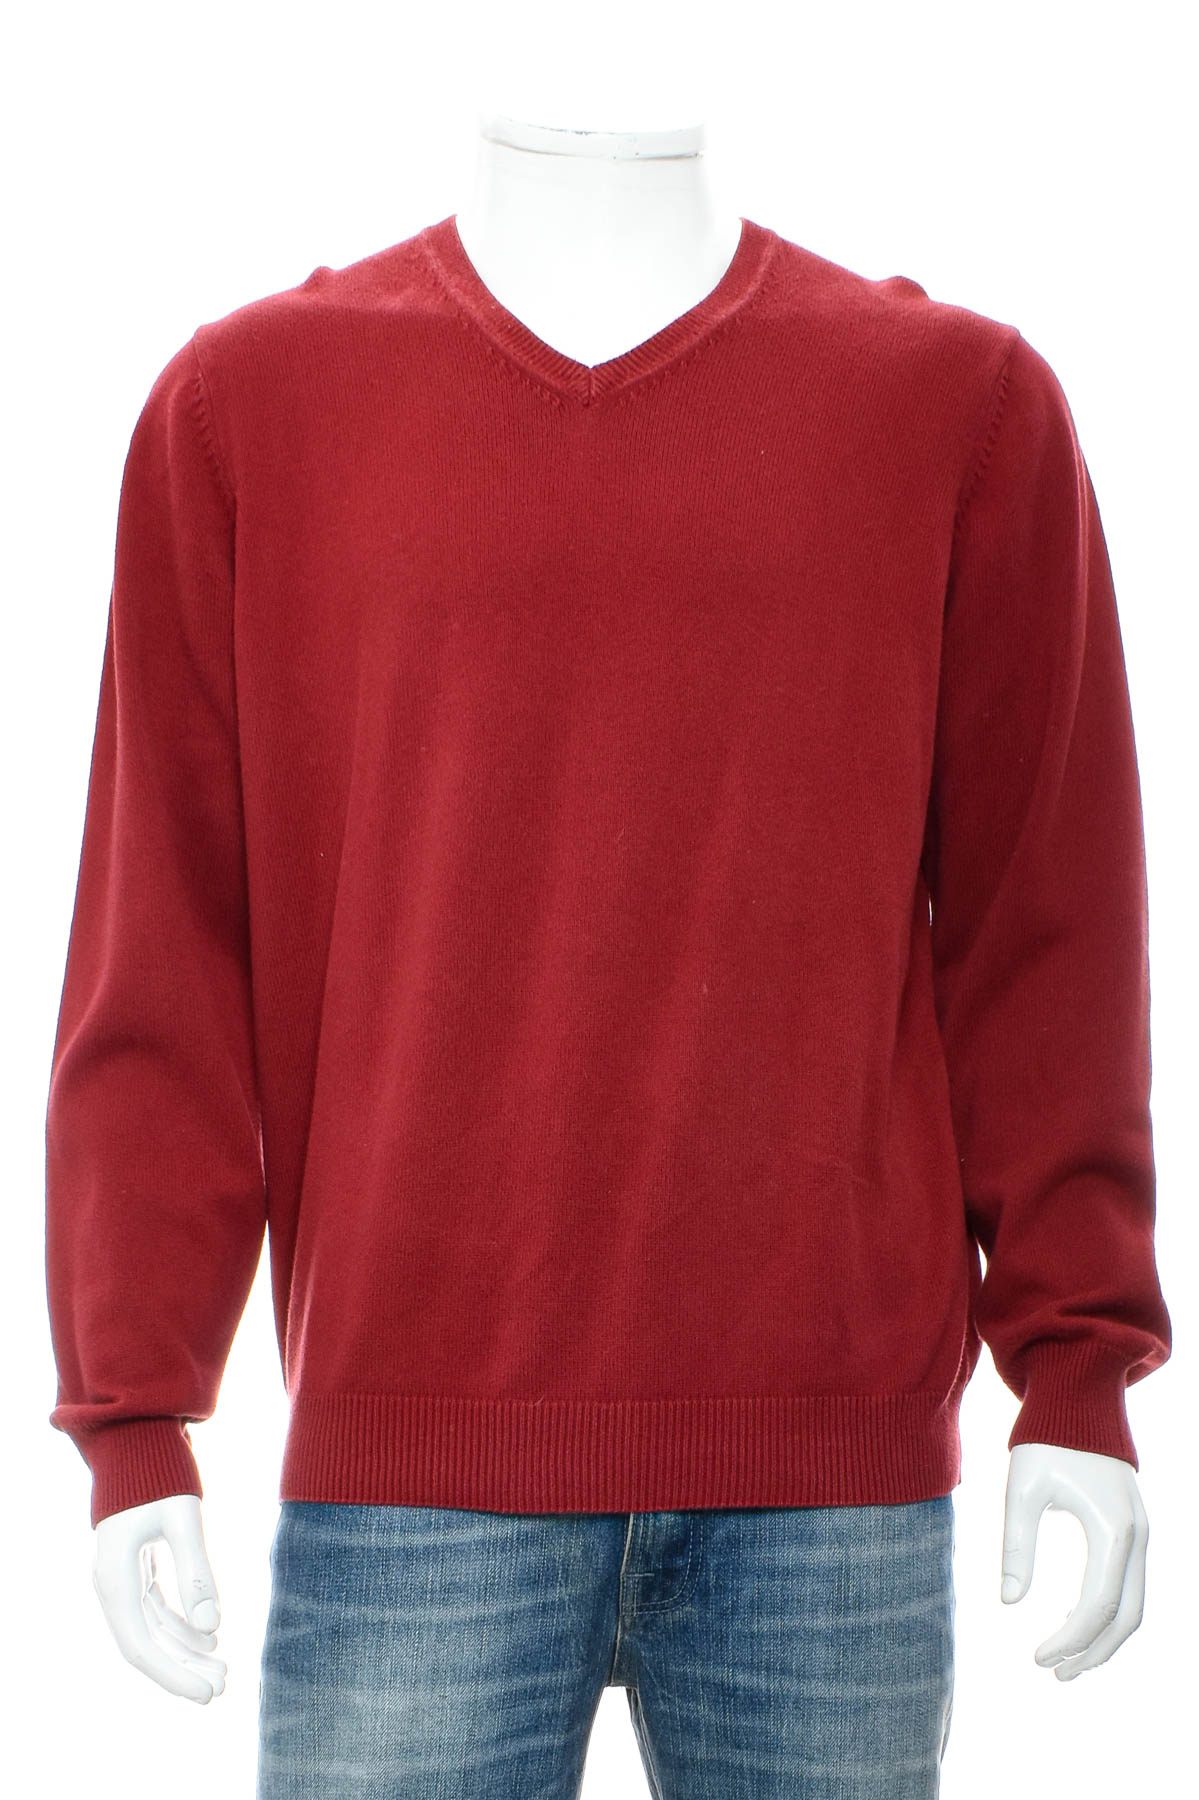 Men's sweater - M&S - 0